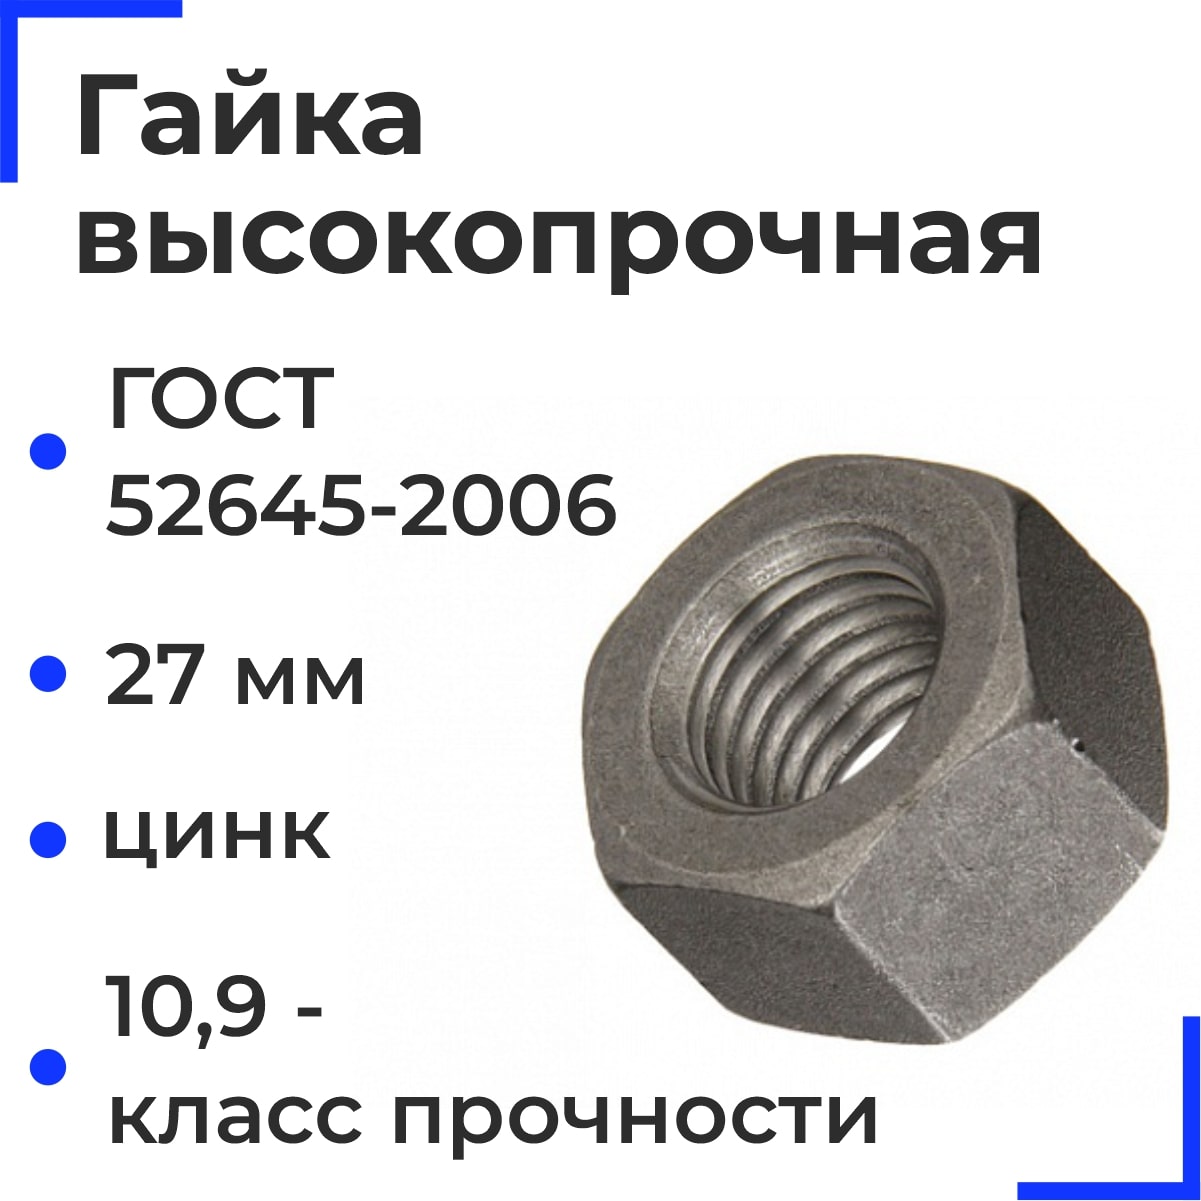 Гайка М27 ГОСТ 52645-2006 кл.пр.10,9 ММК